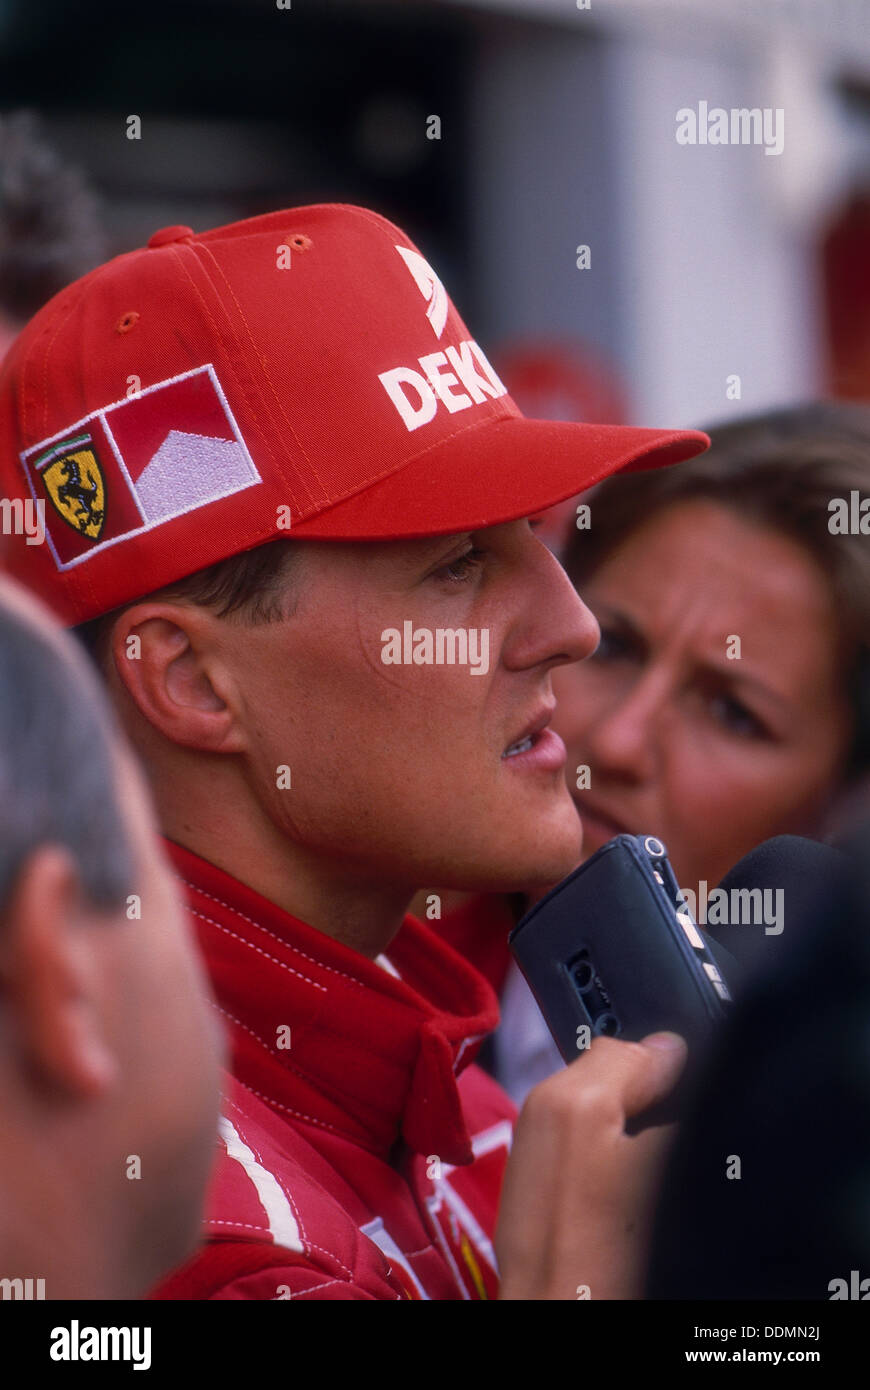 Michael Schumacher being interviewed, British Grand Prix, Silverstone, Northamptonshire, 1997. Artist: Unknown Stock Photo